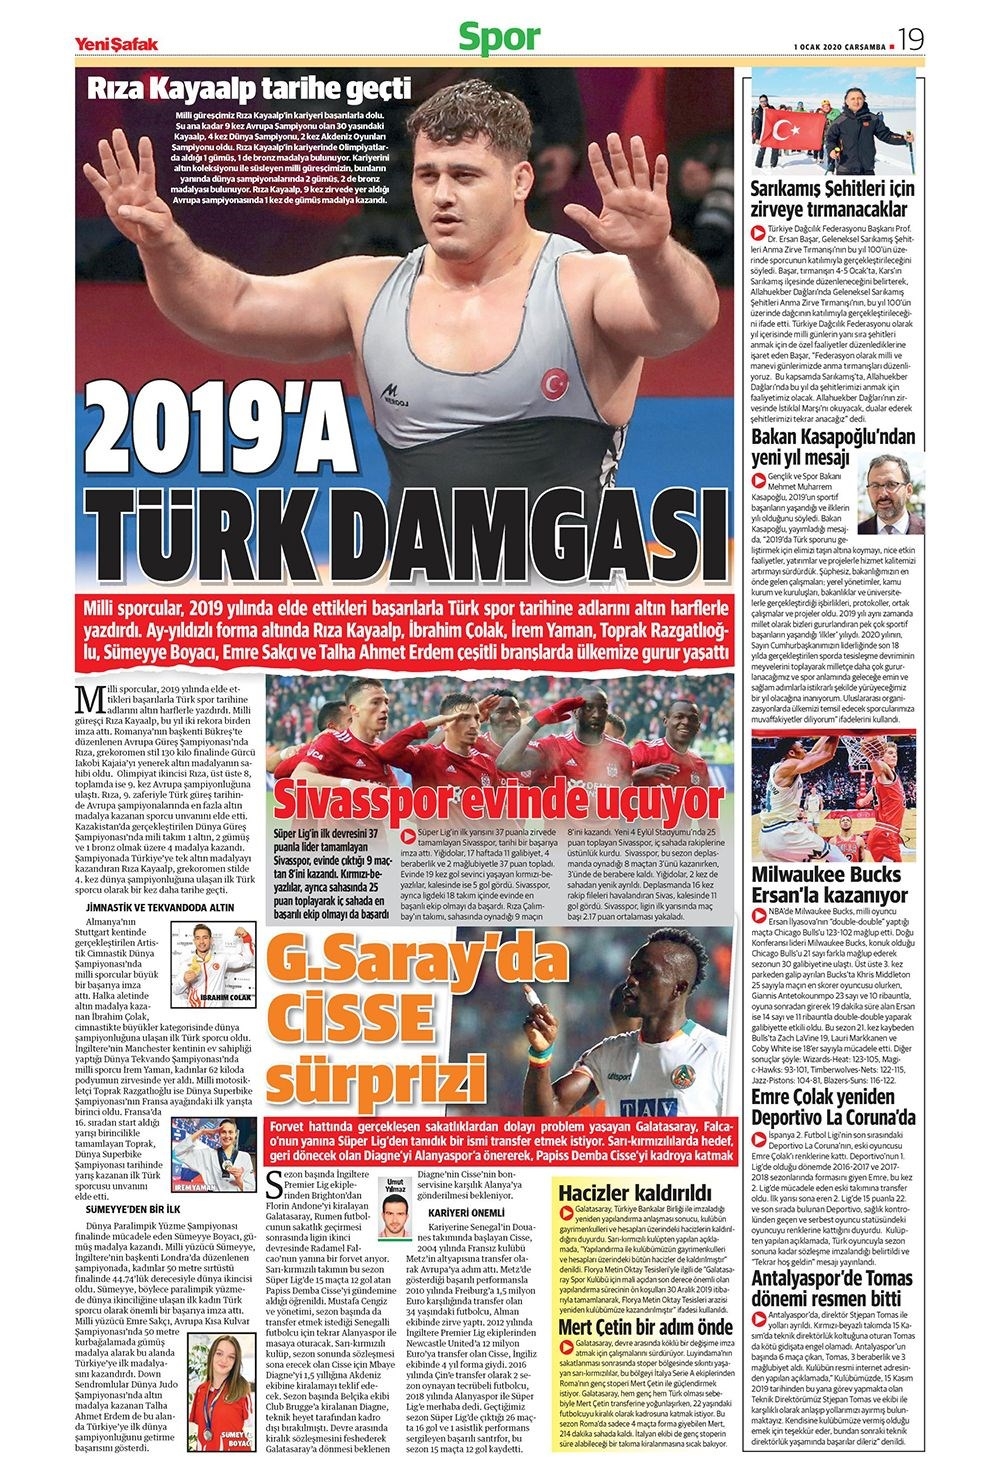 Yeni yılın ilk spor manşetleri...Günün spor manşetleri (1 Ocak 2020) 14